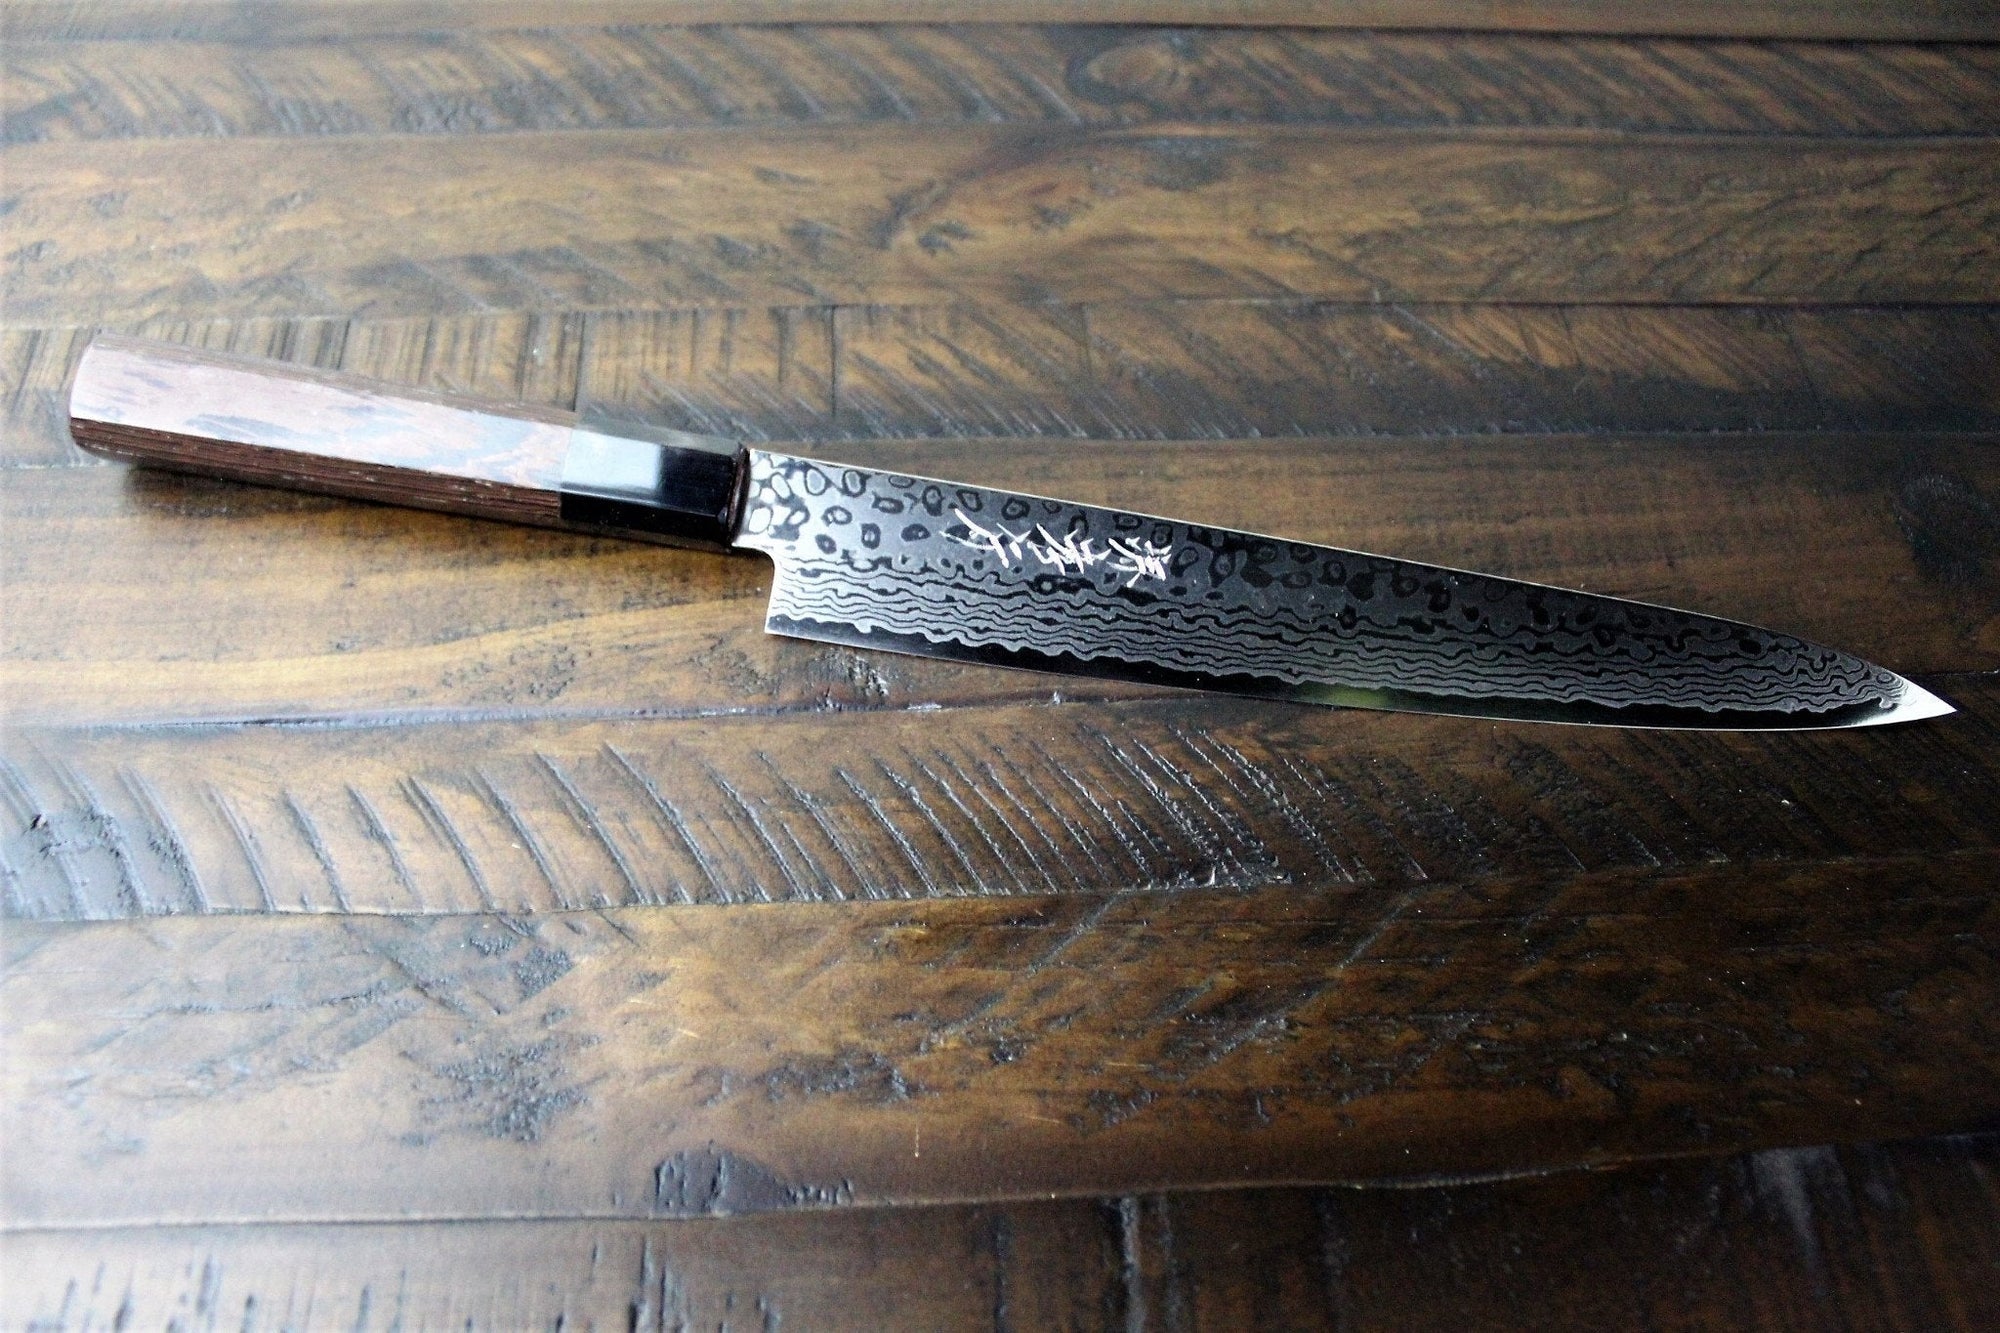 Kitchen Knives - Sakai Takayuki Sujihiki Slicer Knife 240mm (9.4") Damascus 69 Layer -Ginga